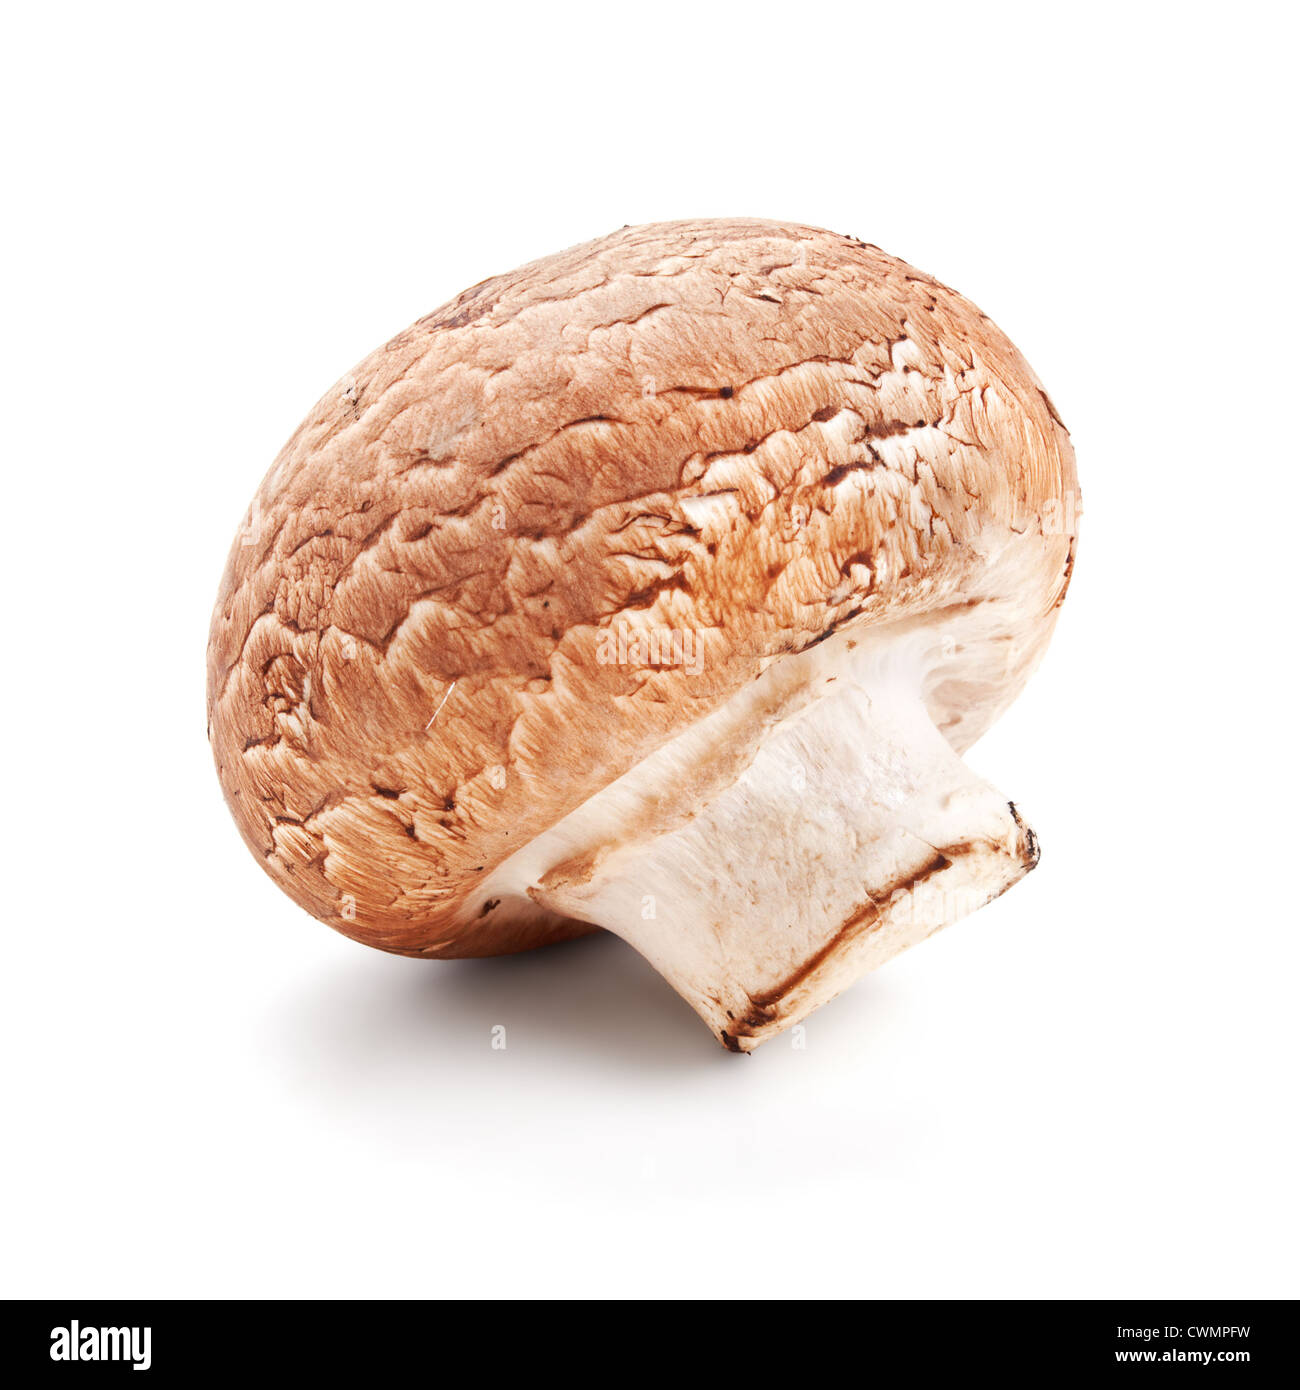 fresh mushroom champignon isolated on white background Stock Photo